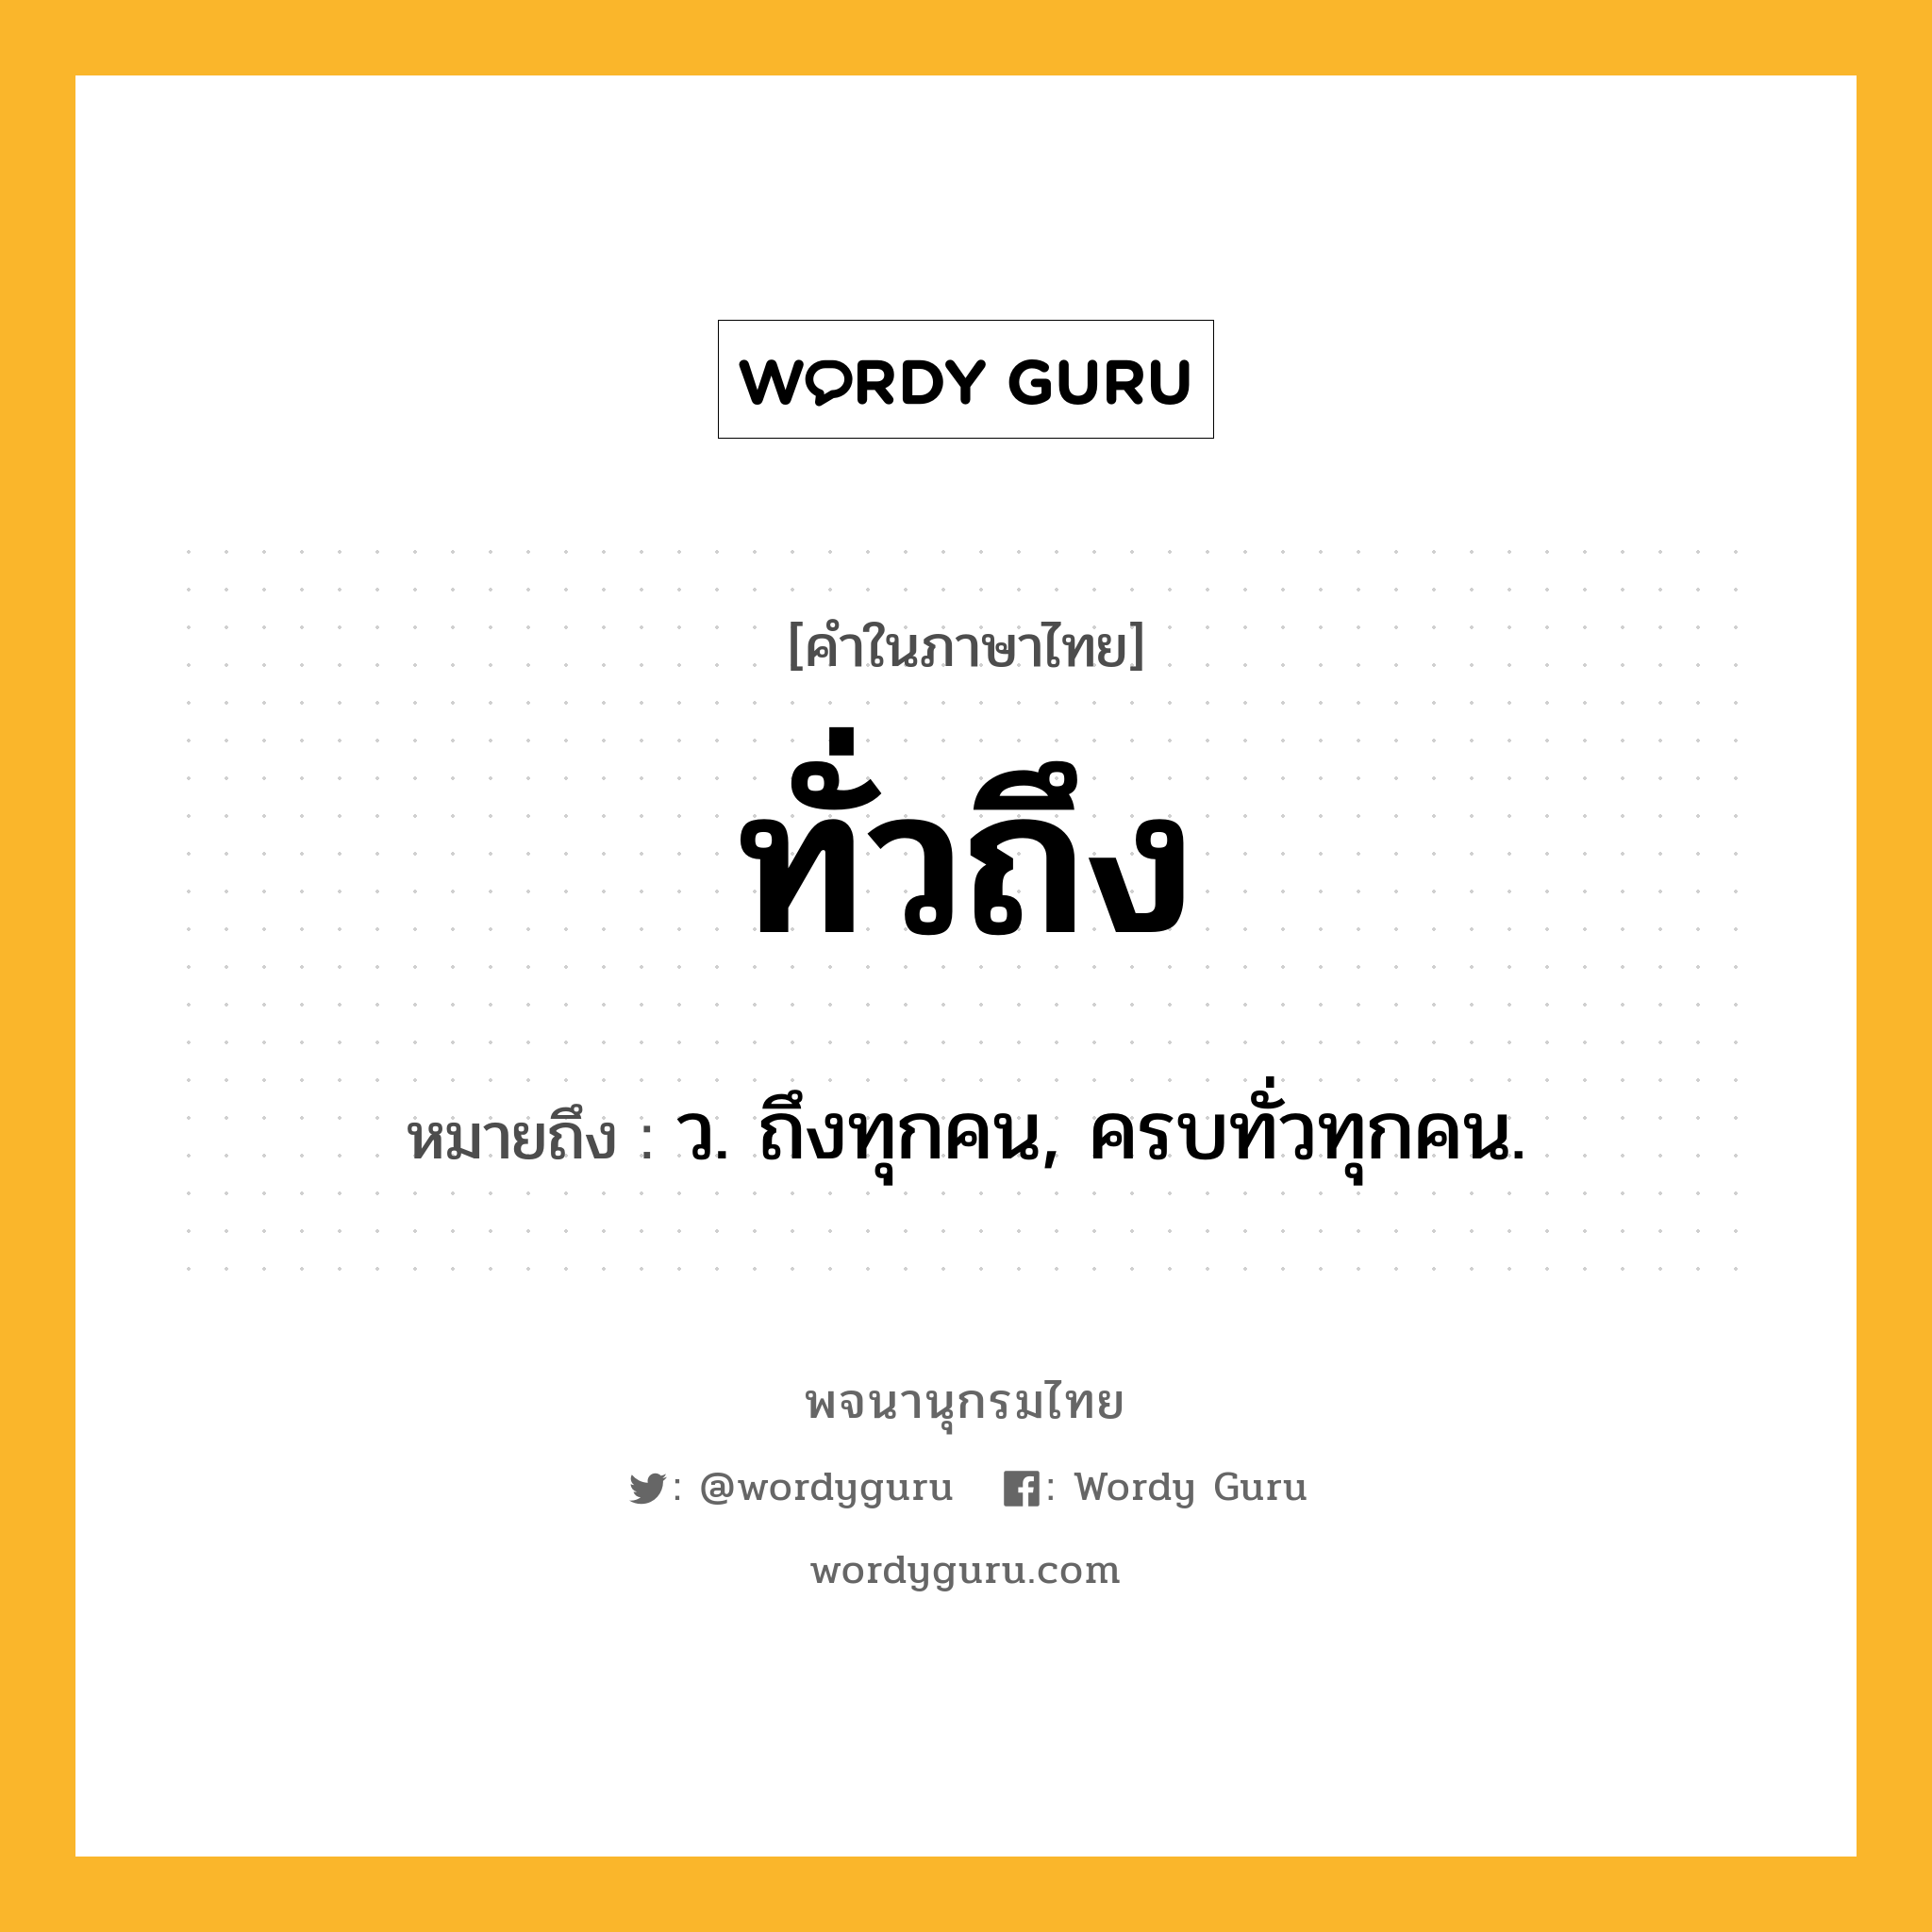 ทั่วถึง หมายถึงอะไร?, คำในภาษาไทย ทั่วถึง หมายถึง ว. ถึงทุกคน, ครบทั่วทุกคน.